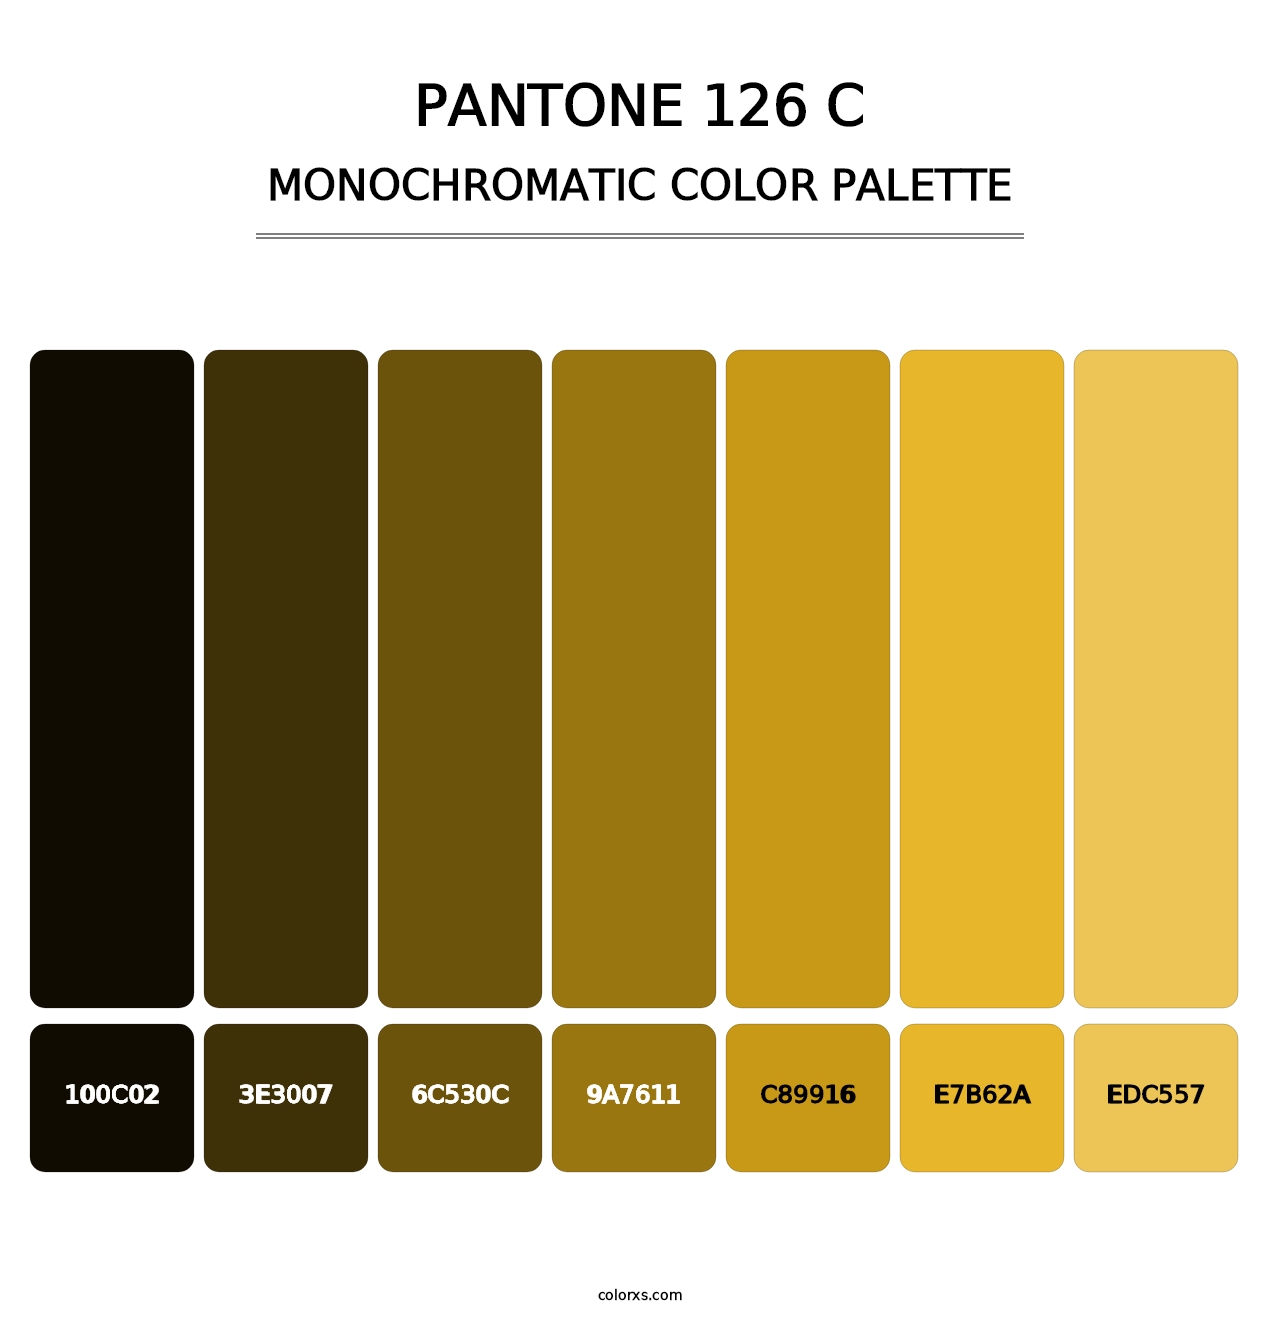 PANTONE 126 C - Monochromatic Color Palette